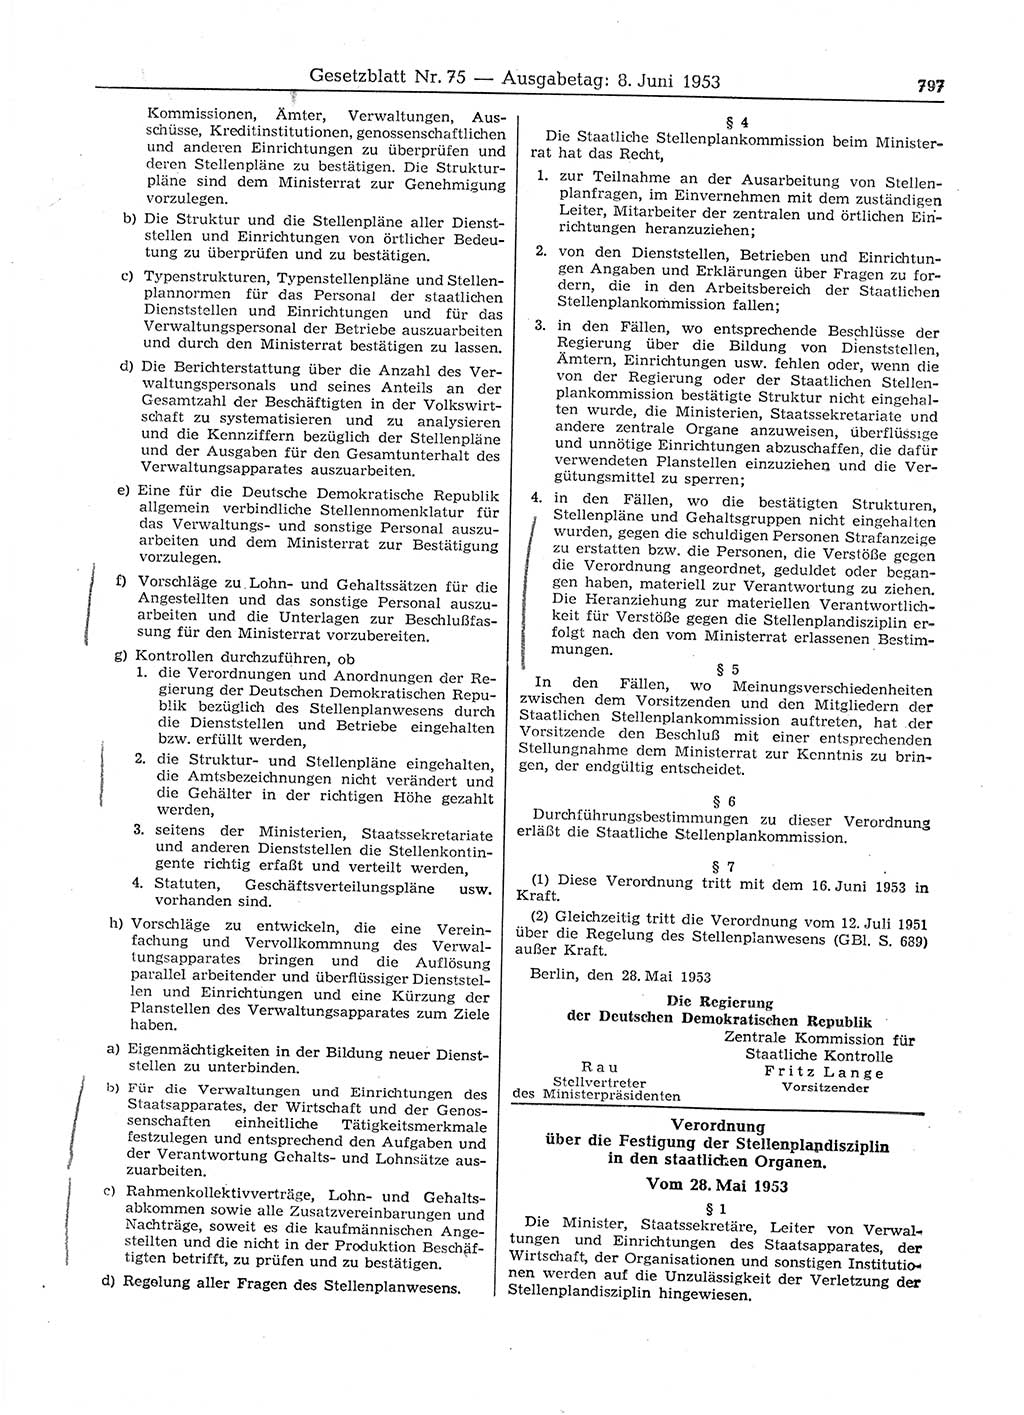 Gesetzblatt (GBl.) der Deutschen Demokratischen Republik (DDR) 1953, Seite 797 (GBl. DDR 1953, S. 797)